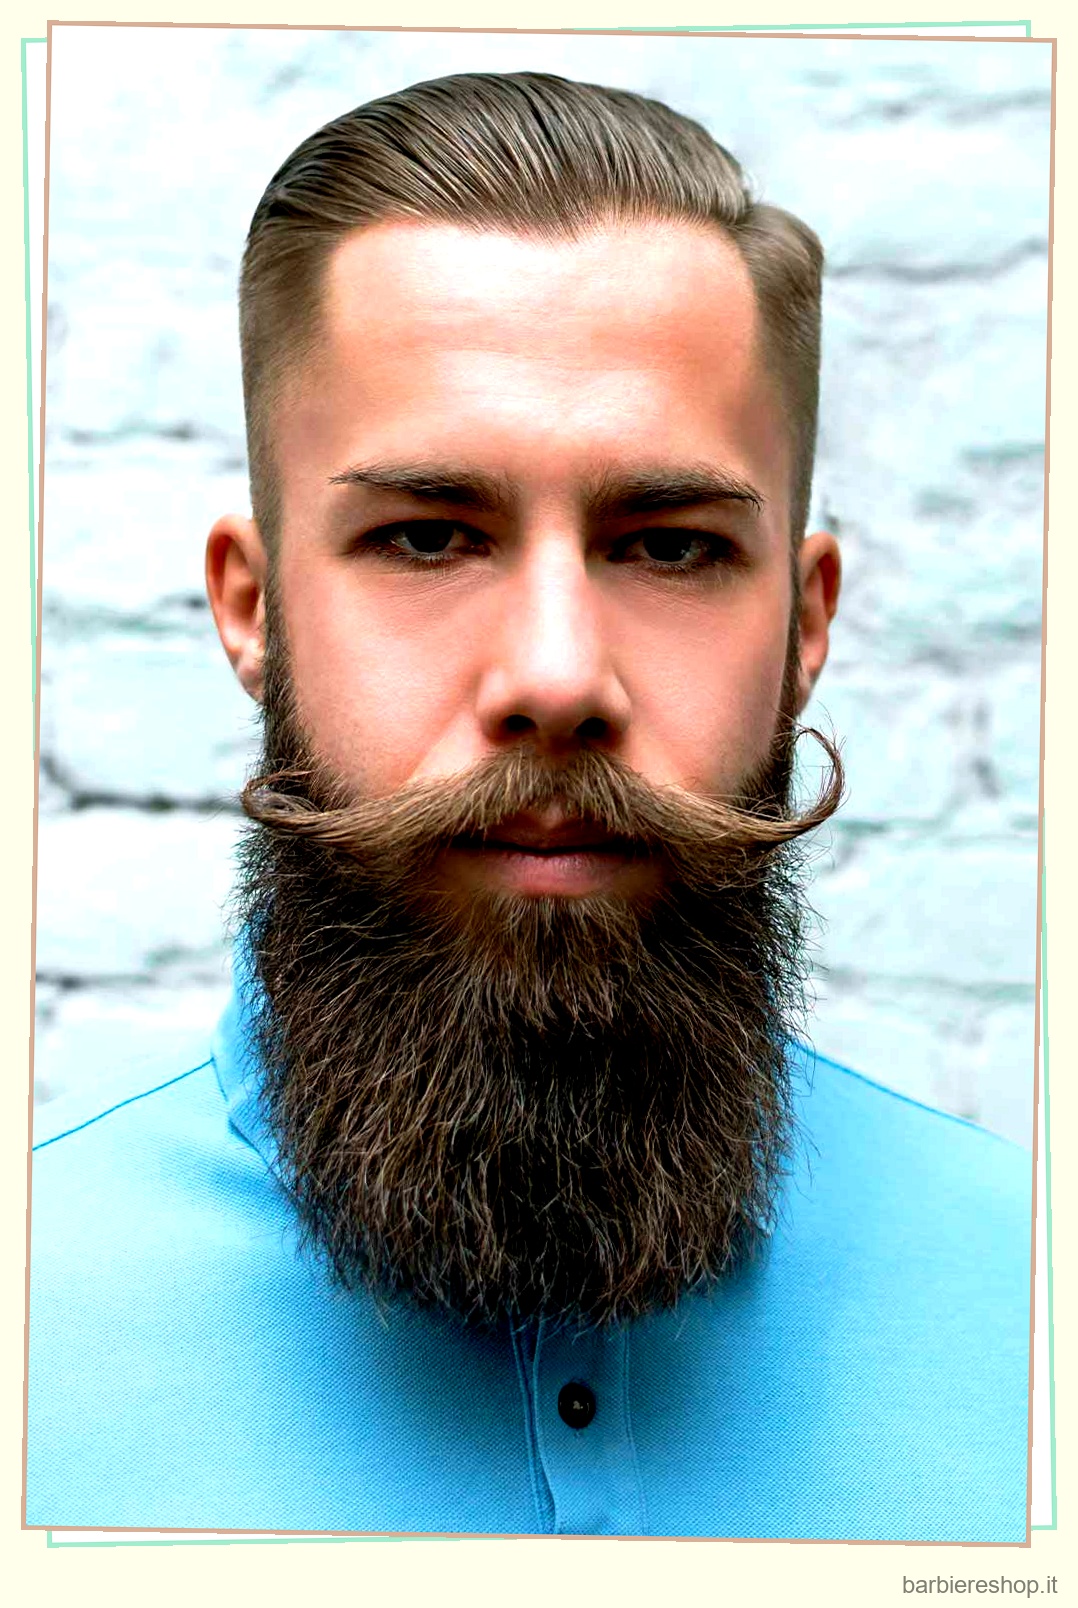 I migliori stili di barba da provare nel 2023 10